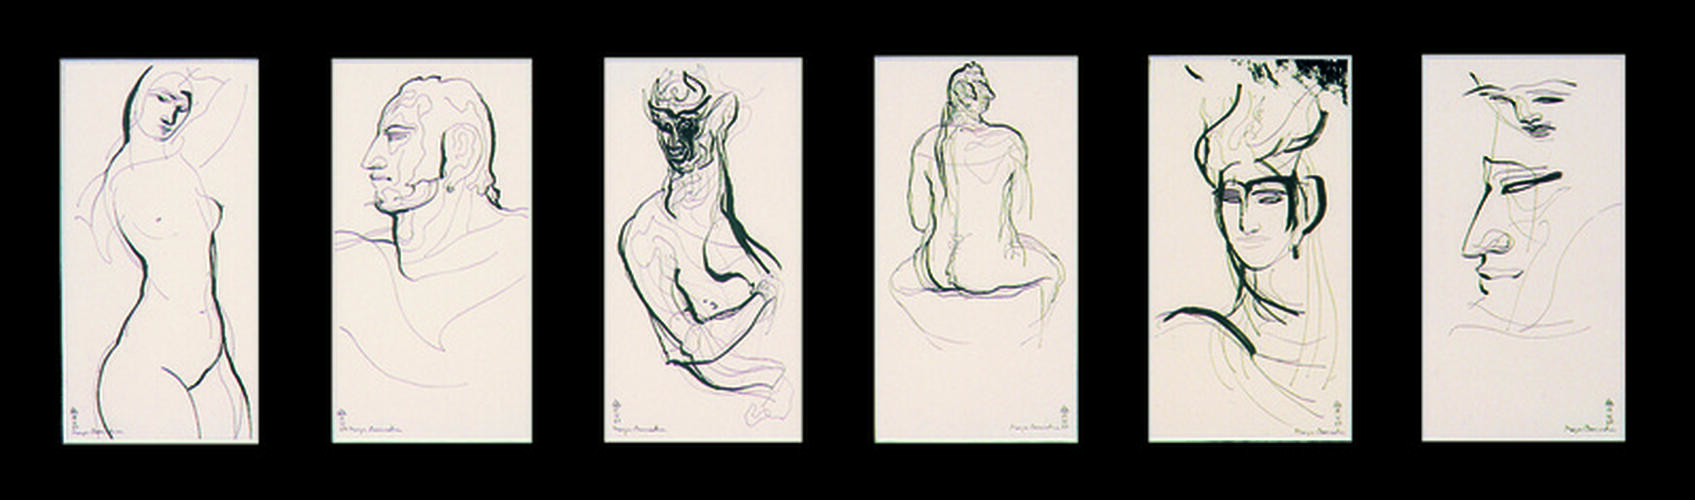 Maya Damadian, Itinéraires II, 1987, 48 x 103 cm, ULB-C-AMC-0044© Collection d'art moderne et contemporain de l'ULB